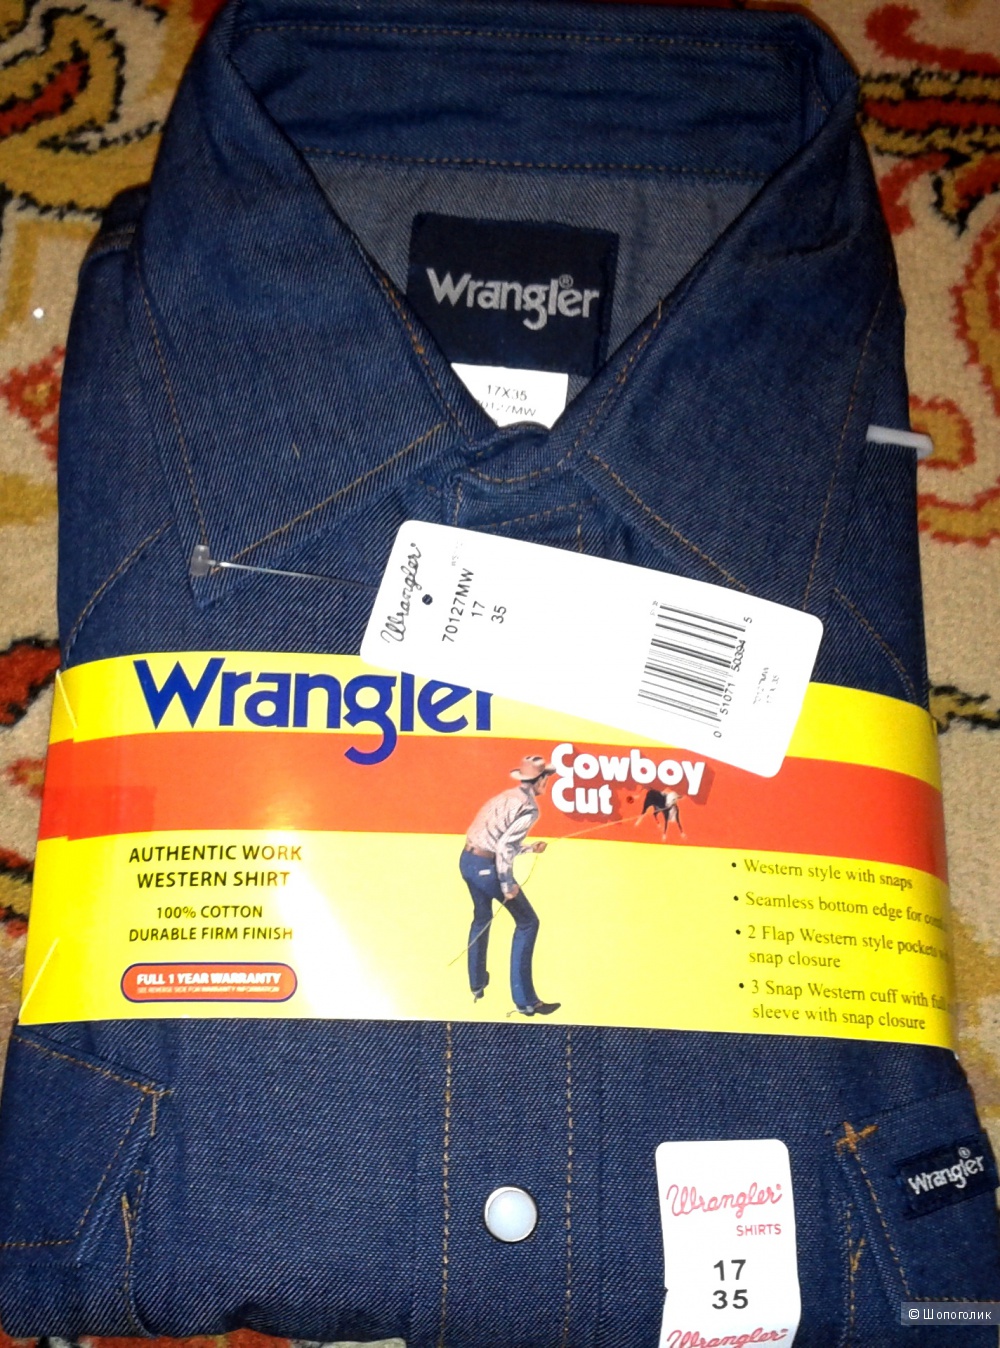 Мужская джинсовая рубашка Wrangler 70127MW